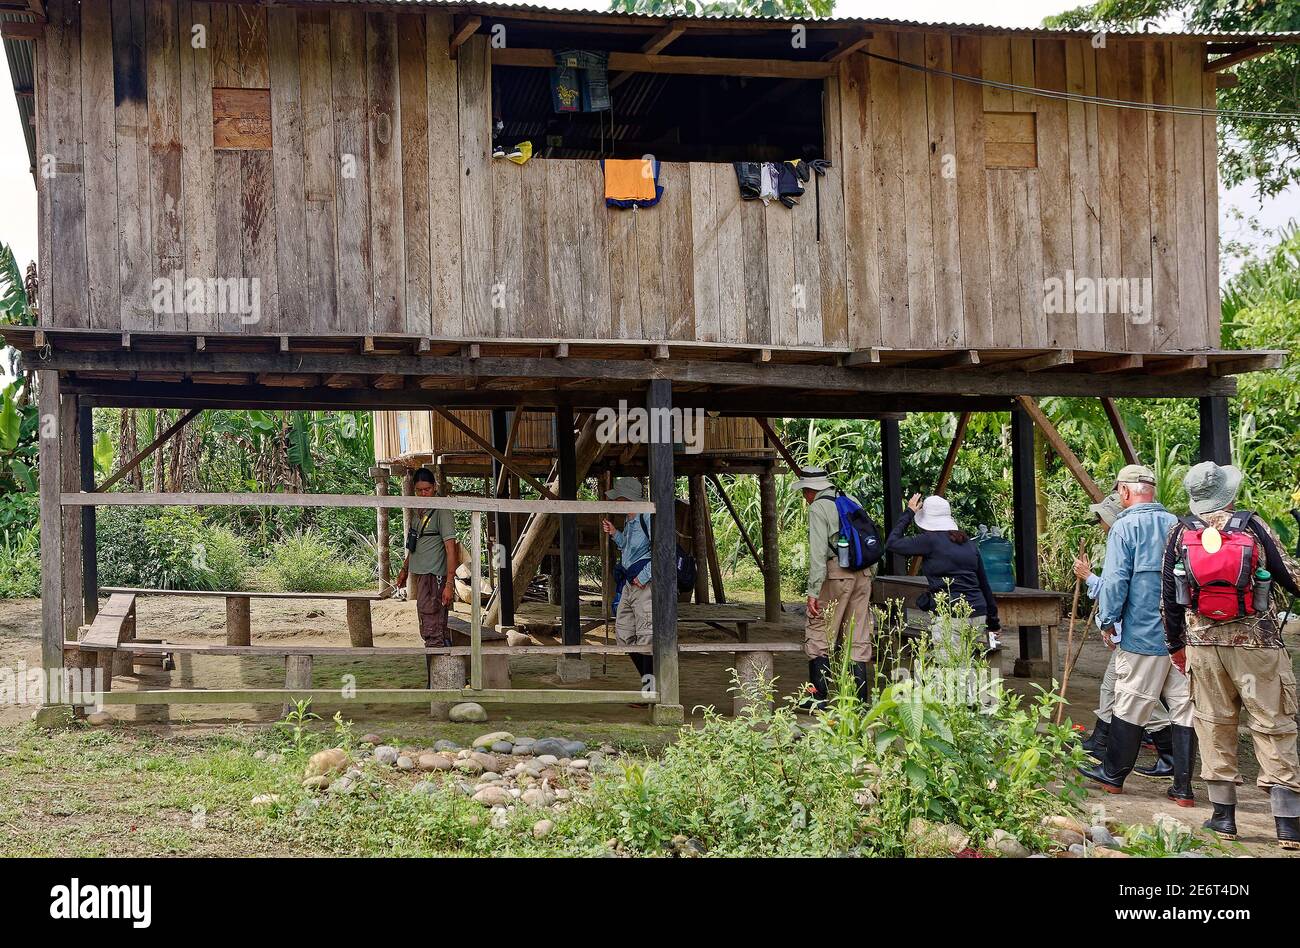 Viaggiatori che camminano sotto la giungla casa, Shaman's, legno, su palafitte, rialzati sopra terra, panchine, visita, apprendimento, persone, Sud America, Amazon Tropi Foto Stock